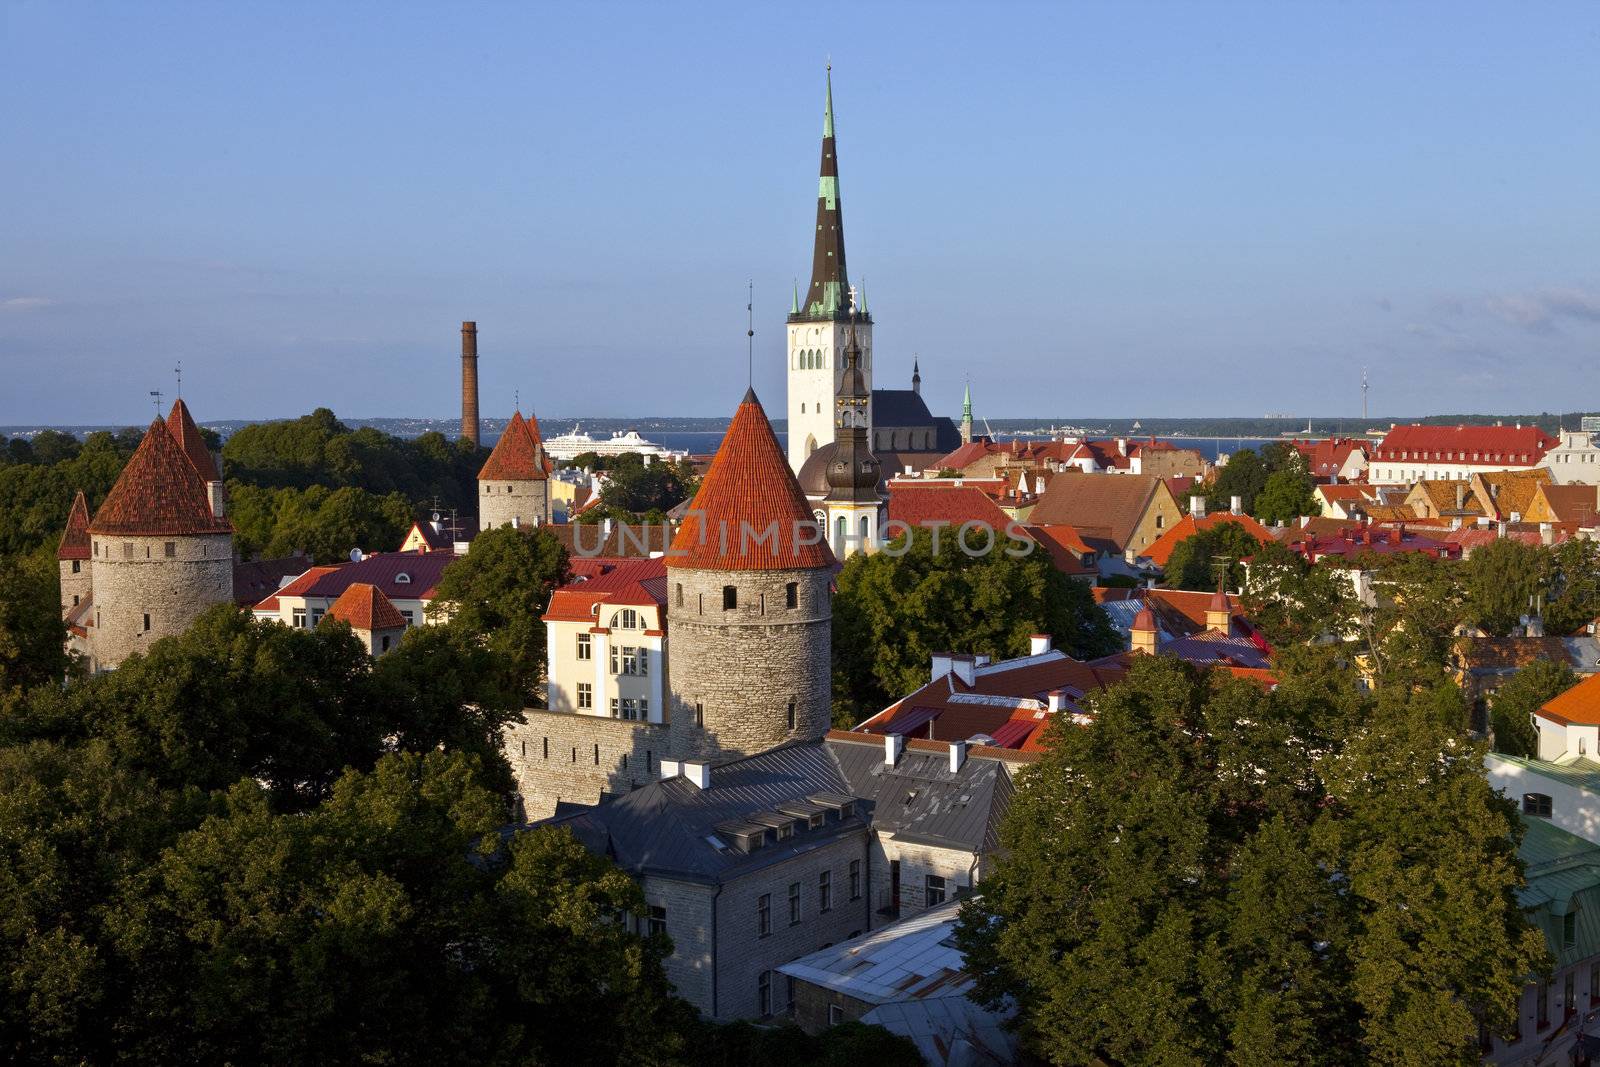 St. Olav's Church and Tower, Tallinn by chrisdorney